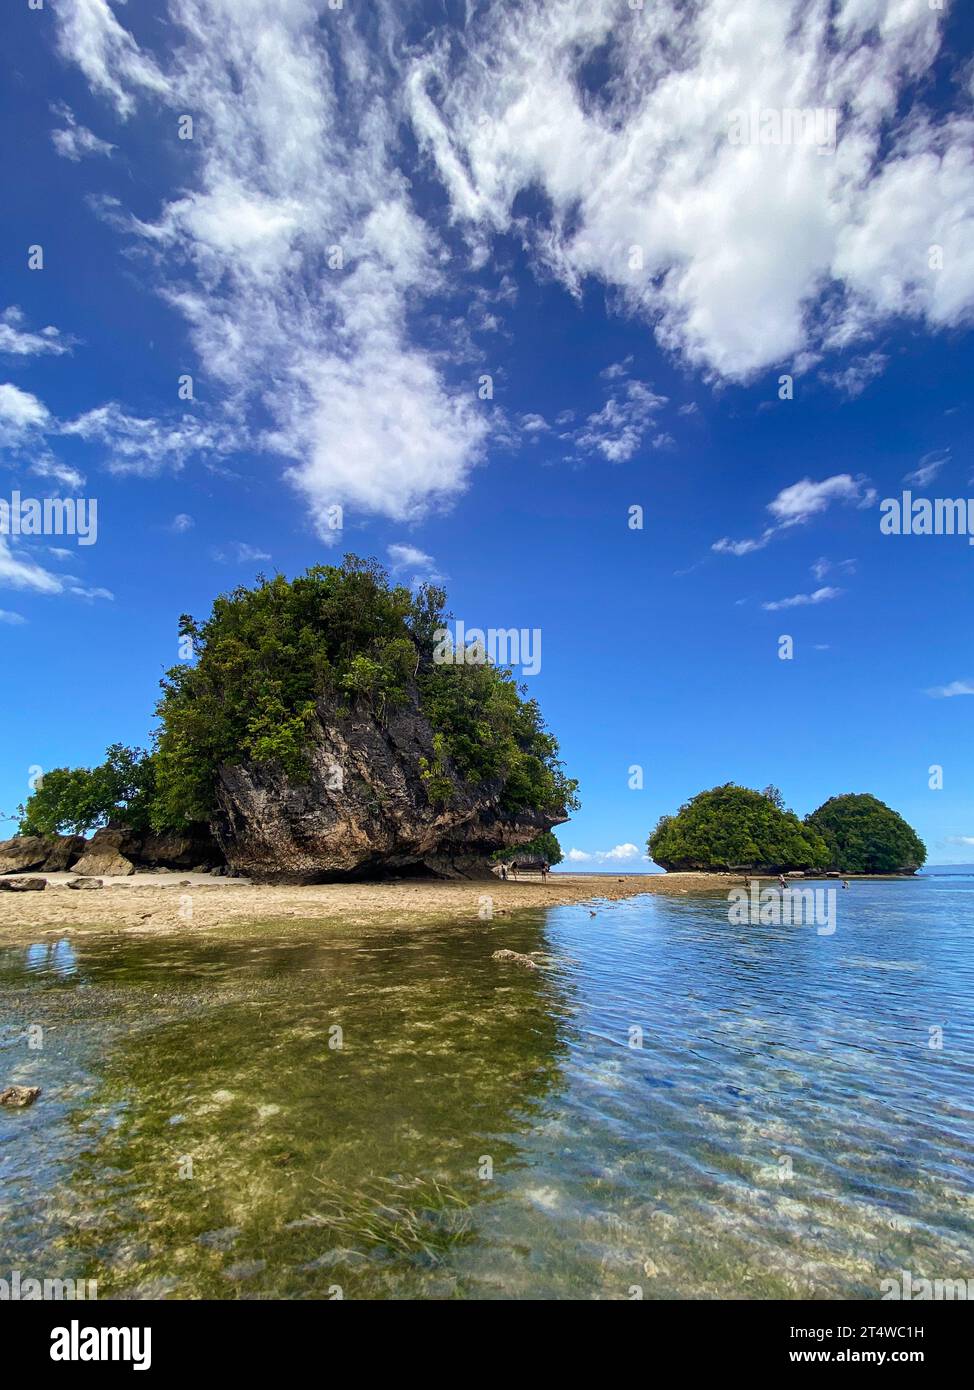 Beach in tropical island. Boslon Island. Surigao del Sur, Philippines. Stock Photo